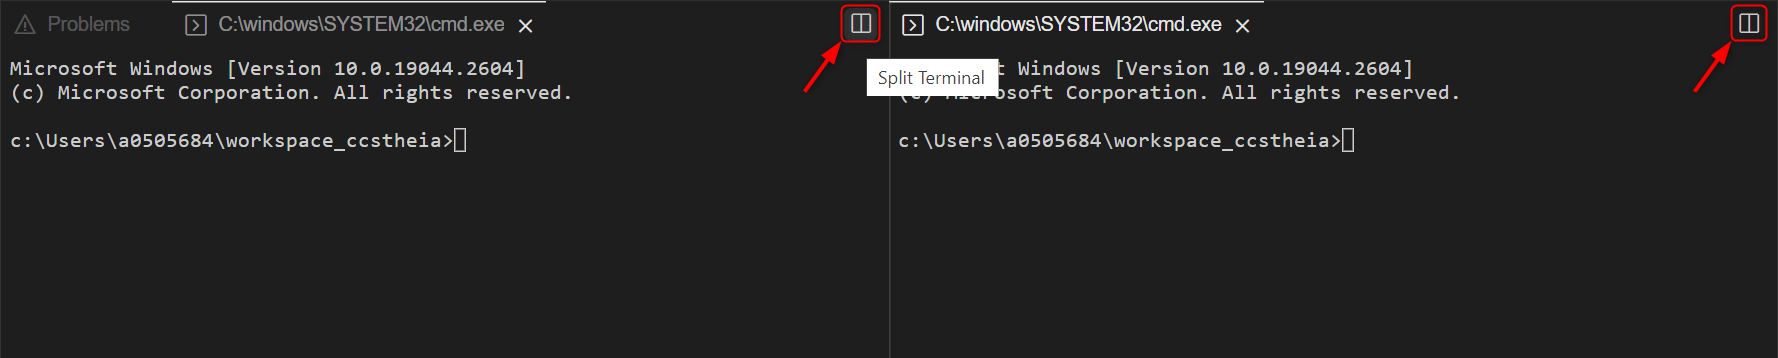 _images/ccs_ide-split-terminal.png